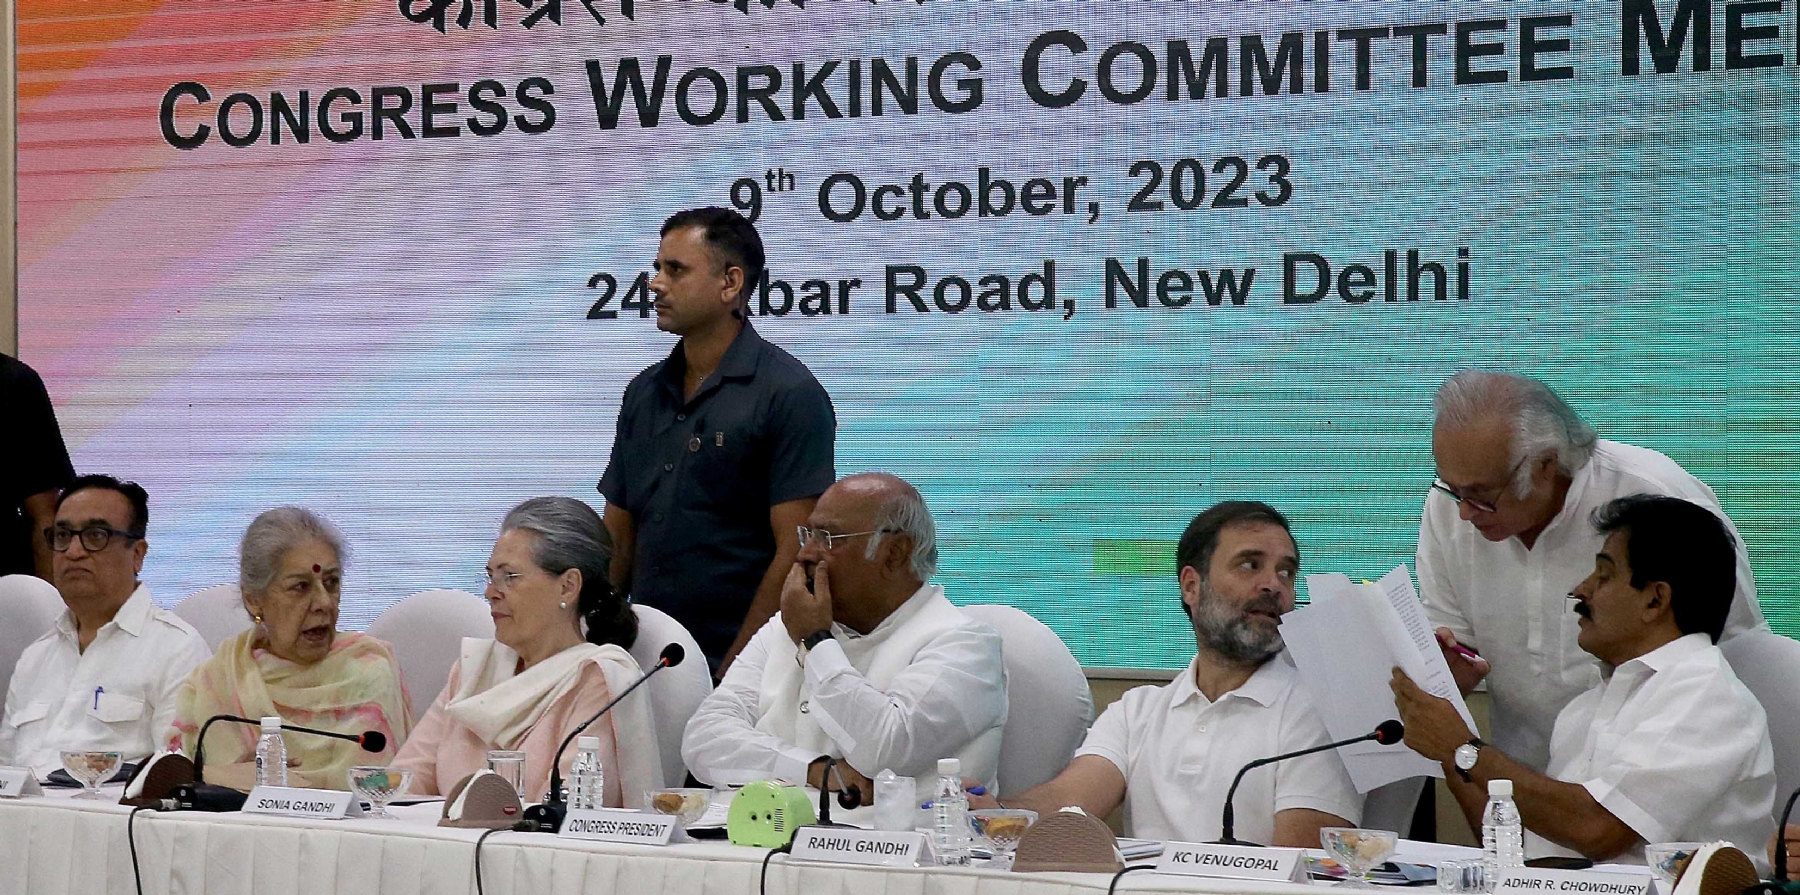 नई दिल्ली में समवार 09 अक्टूबर को एआईसीसी मुख्यालय पर कांग्रेस कार्य समिति की बैठक में भागलेते सोनिया गांधी और कांग्रेस के राष्ट्रीय अध्यक्ष मल्लिकार्जुन खड़गे और राहुल गांधी व अन्य। हिन्दुस्थान समाचार फोटो गणेश बिष्ट